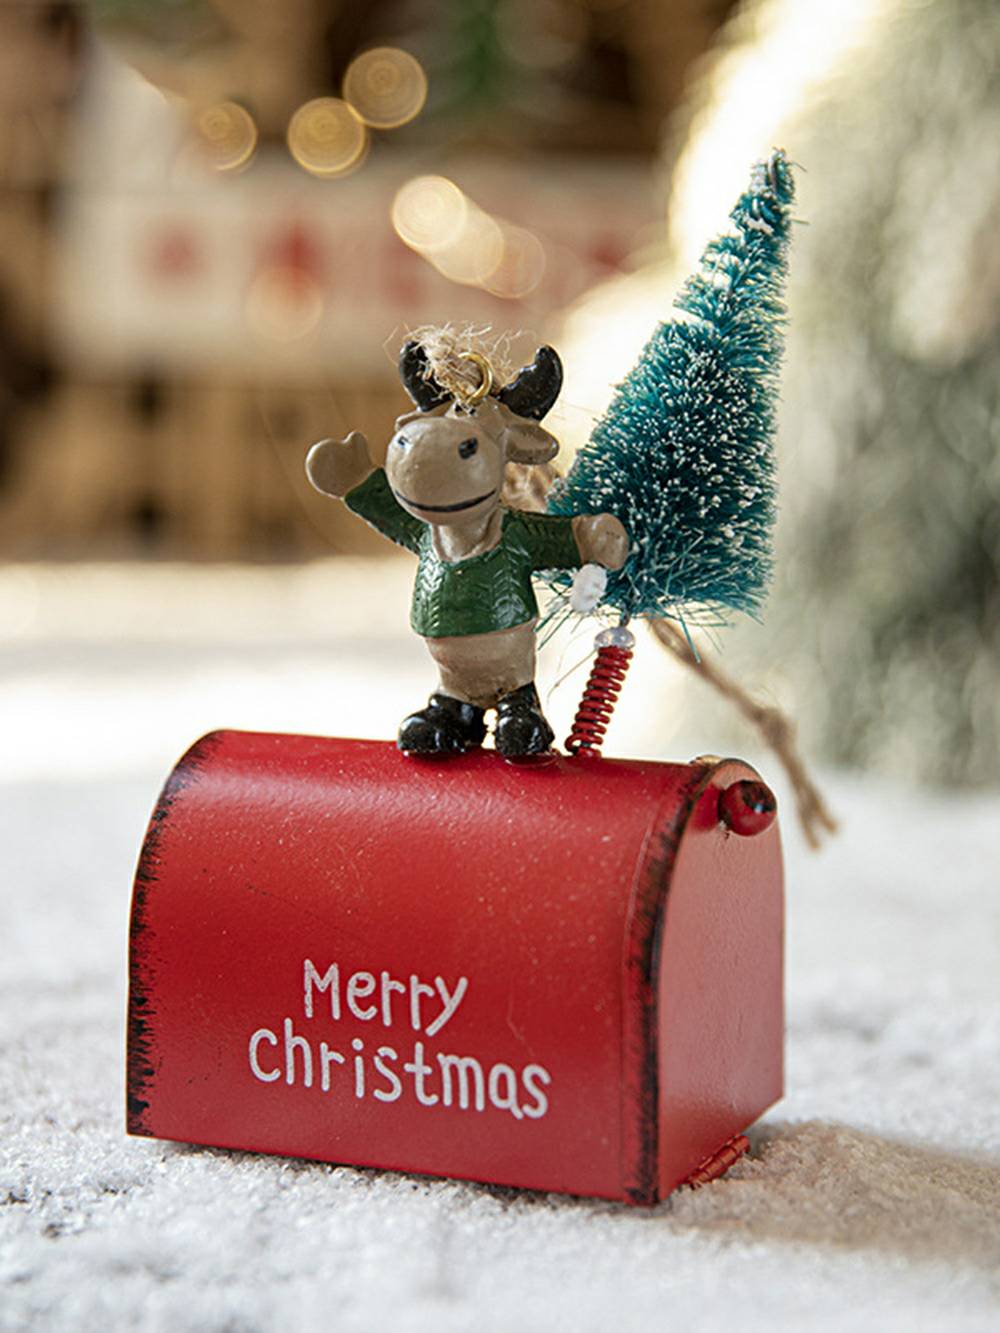 Decoração de árvore de Natal com caixa de correio de Papai Noel pintada de ferro